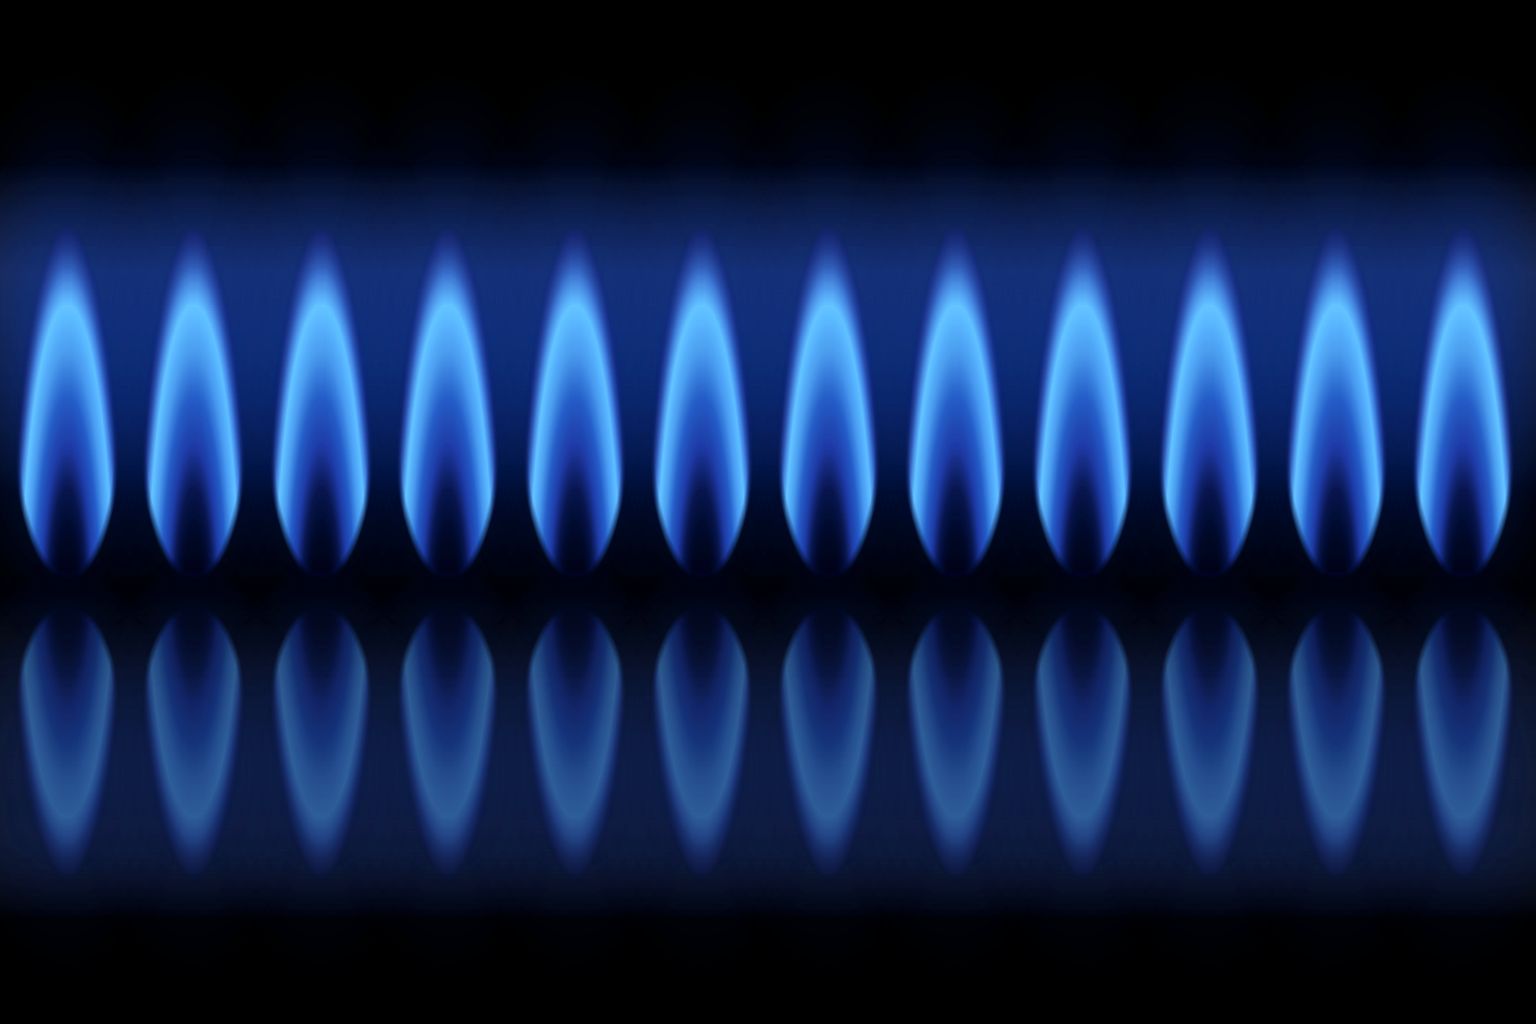 Gaskrise: Deutschland muss mehr Gas sparen als jedes andere EU-Land